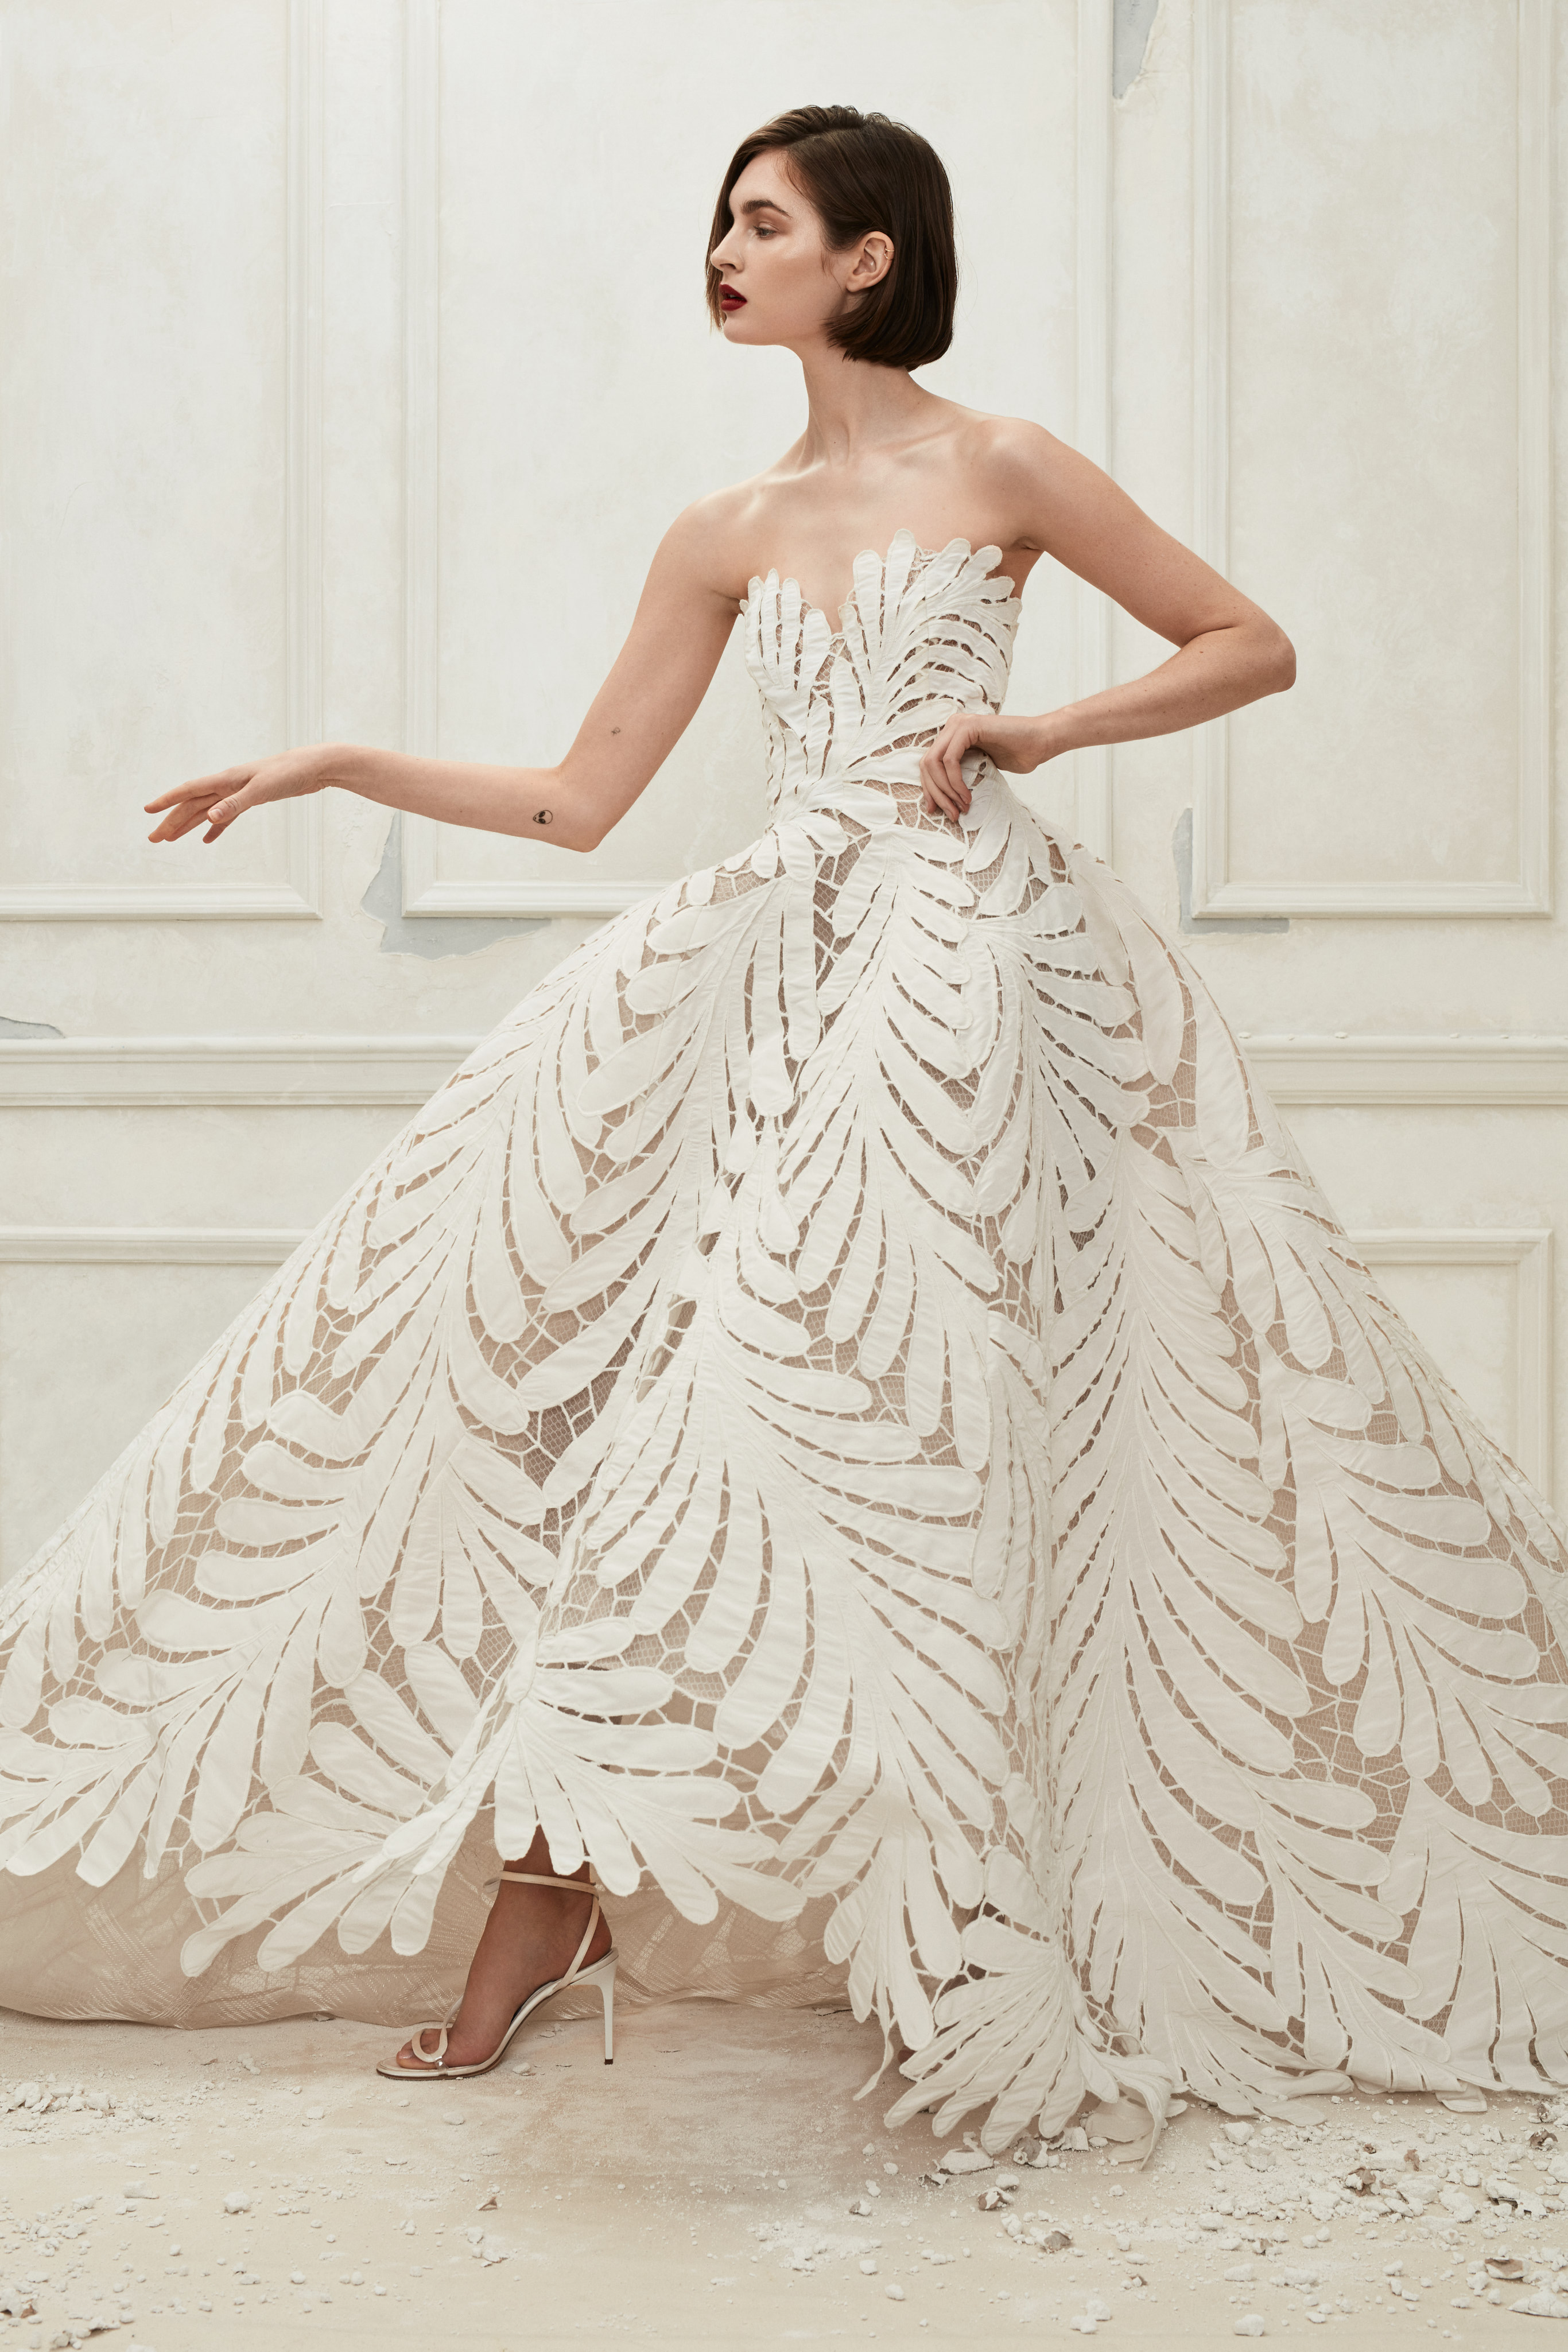 Oscar de la Renta Fall 2019 Wedding Dress Collection | Martha Stewart ...